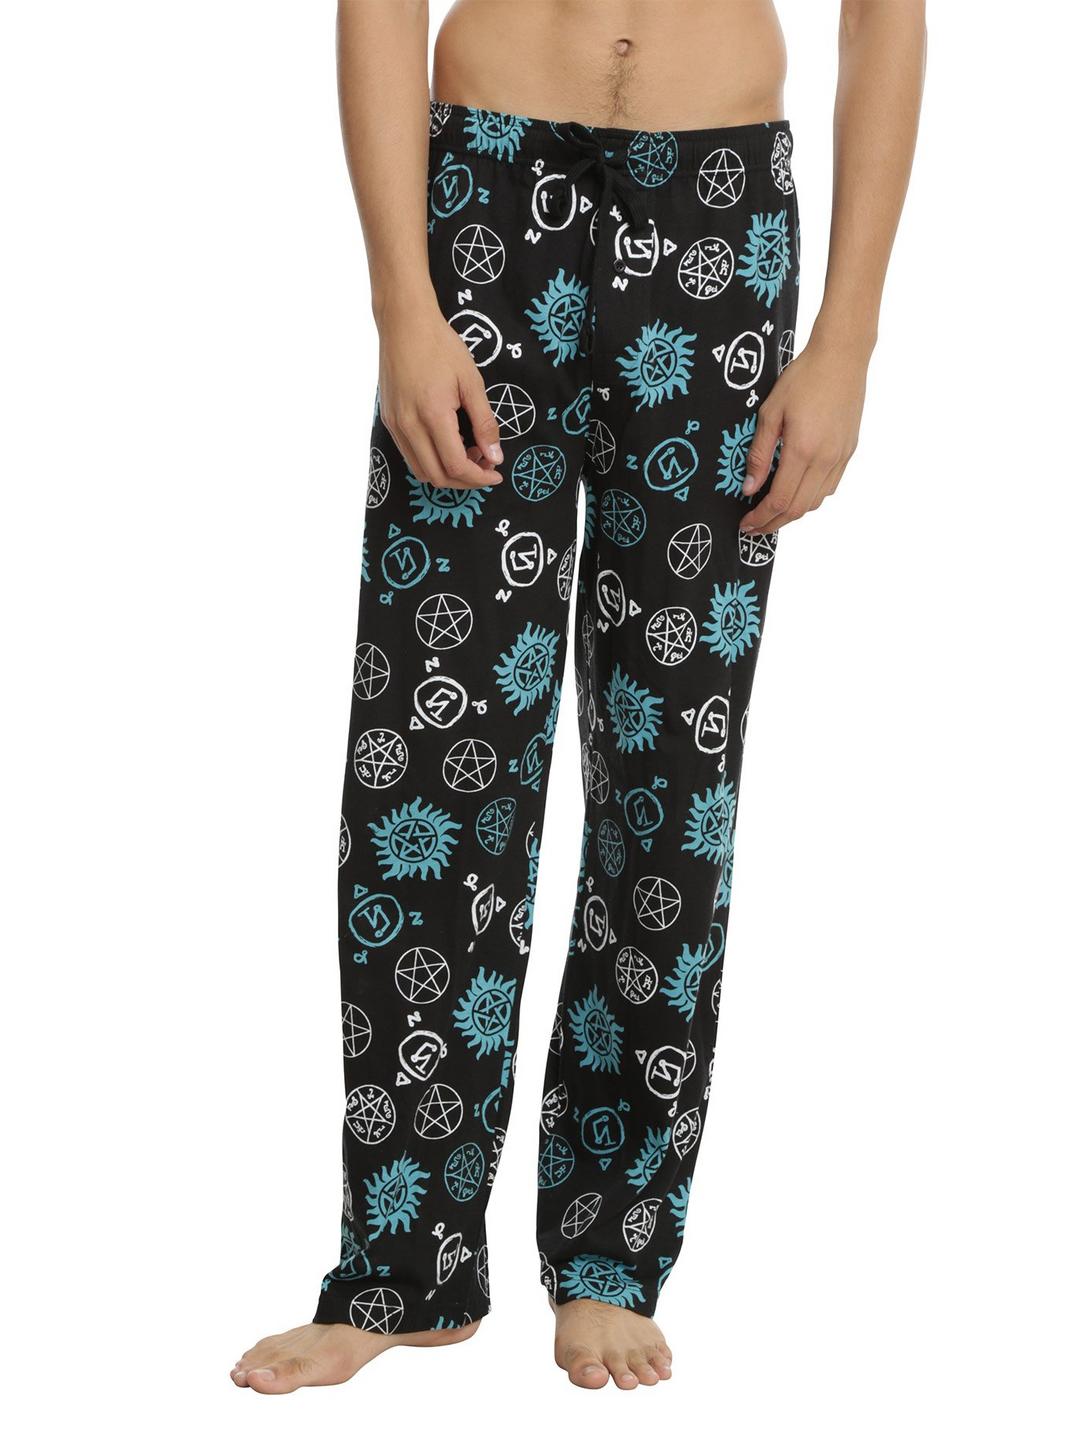 Supernatural Symbols Print Guys Pajama Pants, BLACK, hi-res